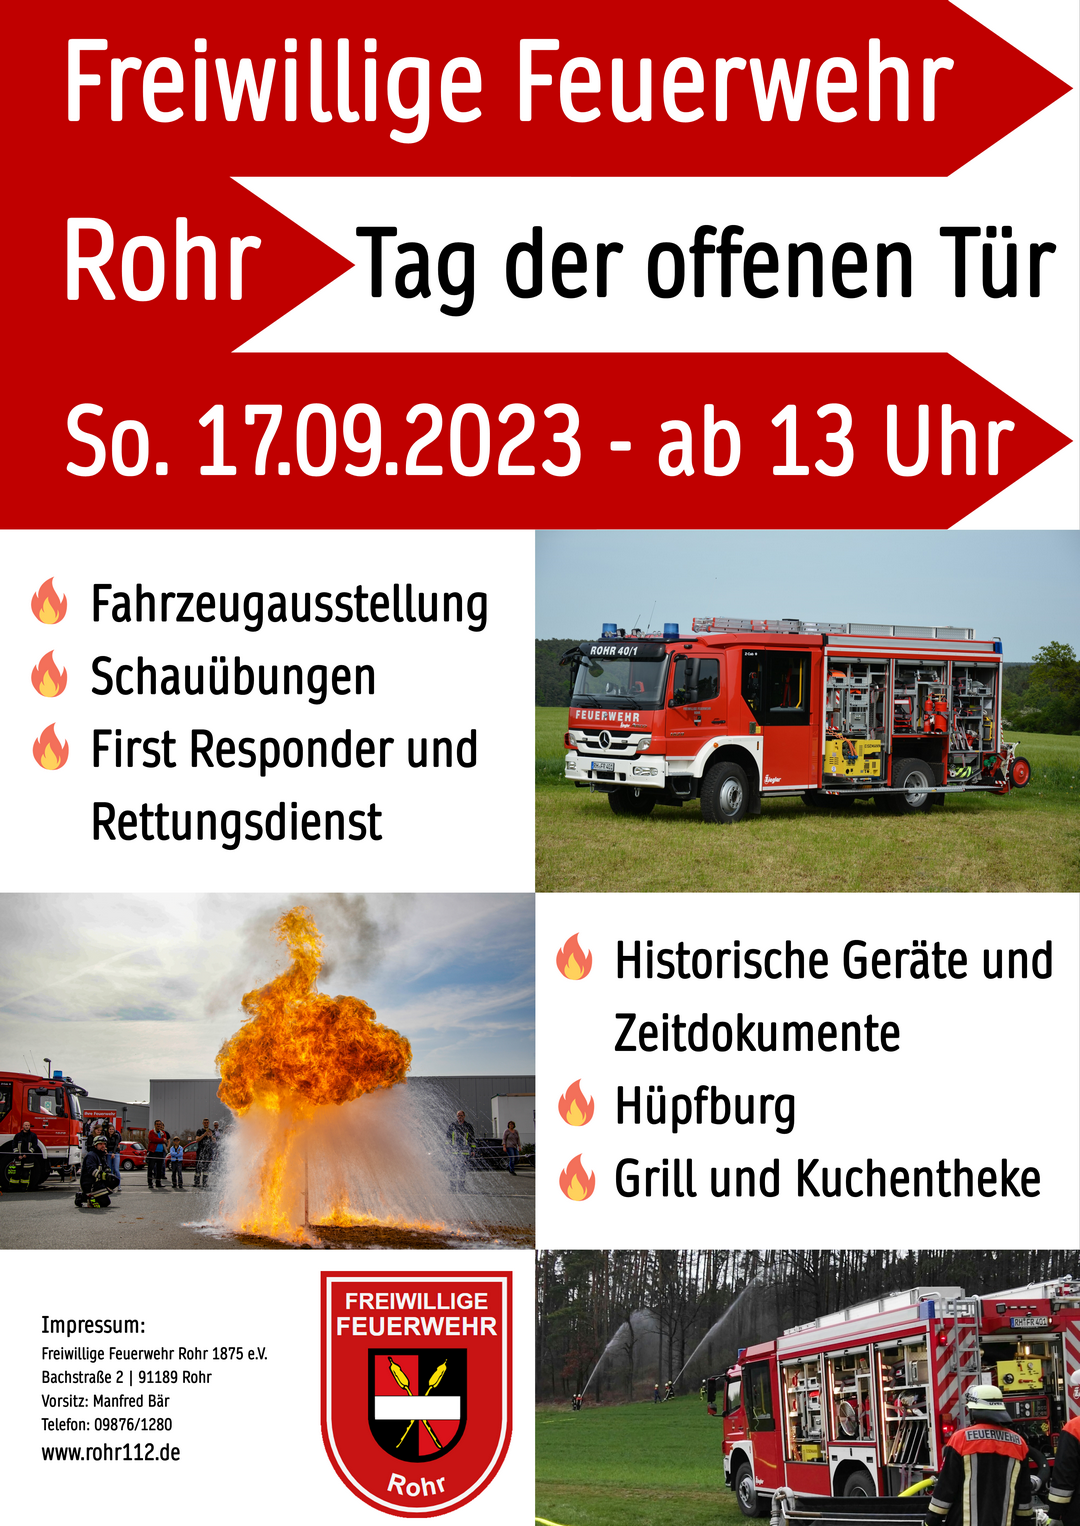 FFW Rohr TagDerOffenenTuer Plakat